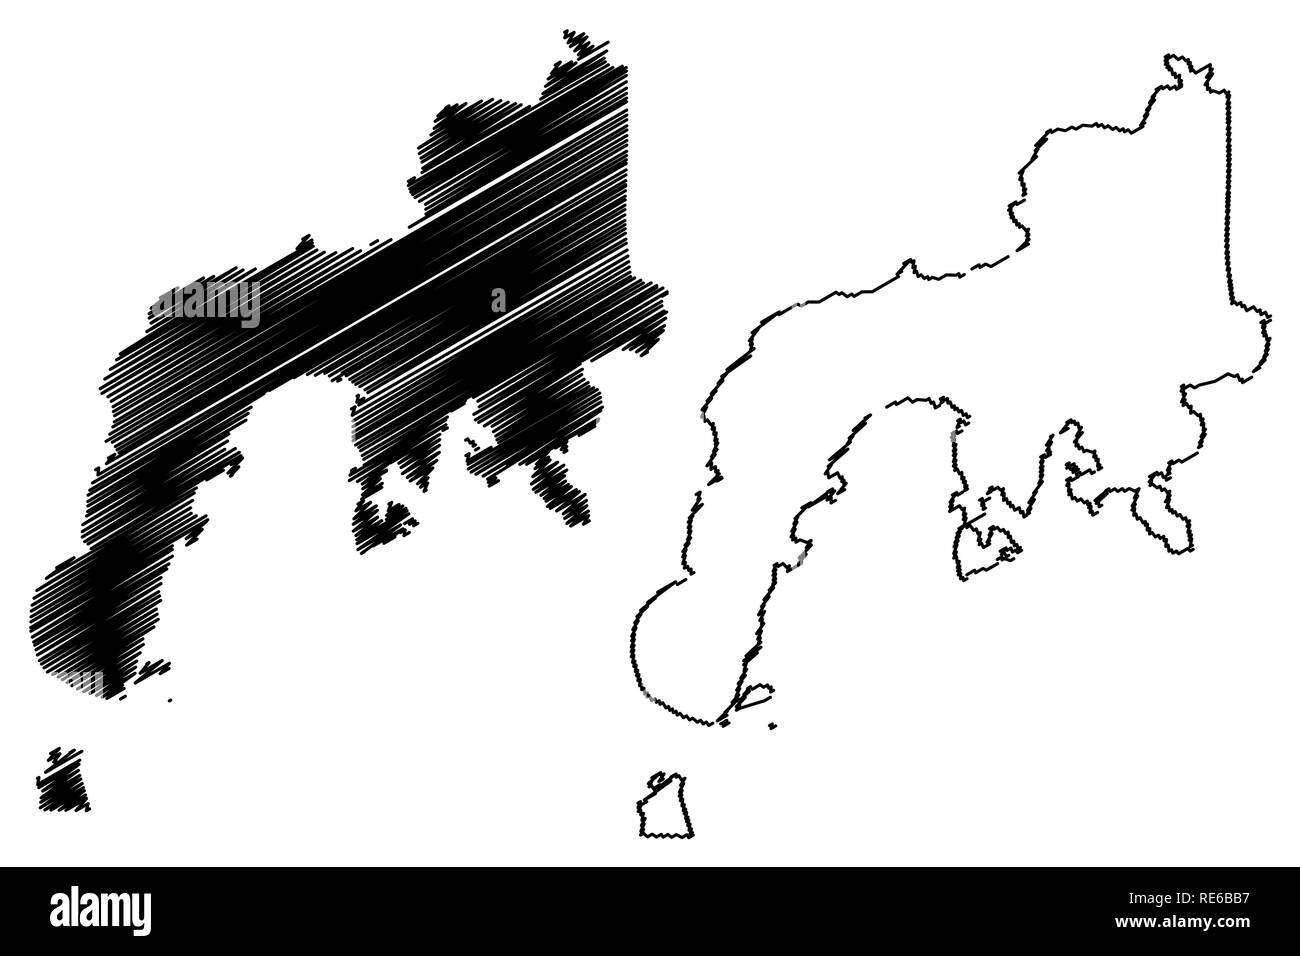 Zamboanga Peninsula Region (Regionen und Provinzen der Philippinen, die Republik der Philippinen) Karte Vektor-illustration, kritzeln Skizze Western Mi Stock Vektor